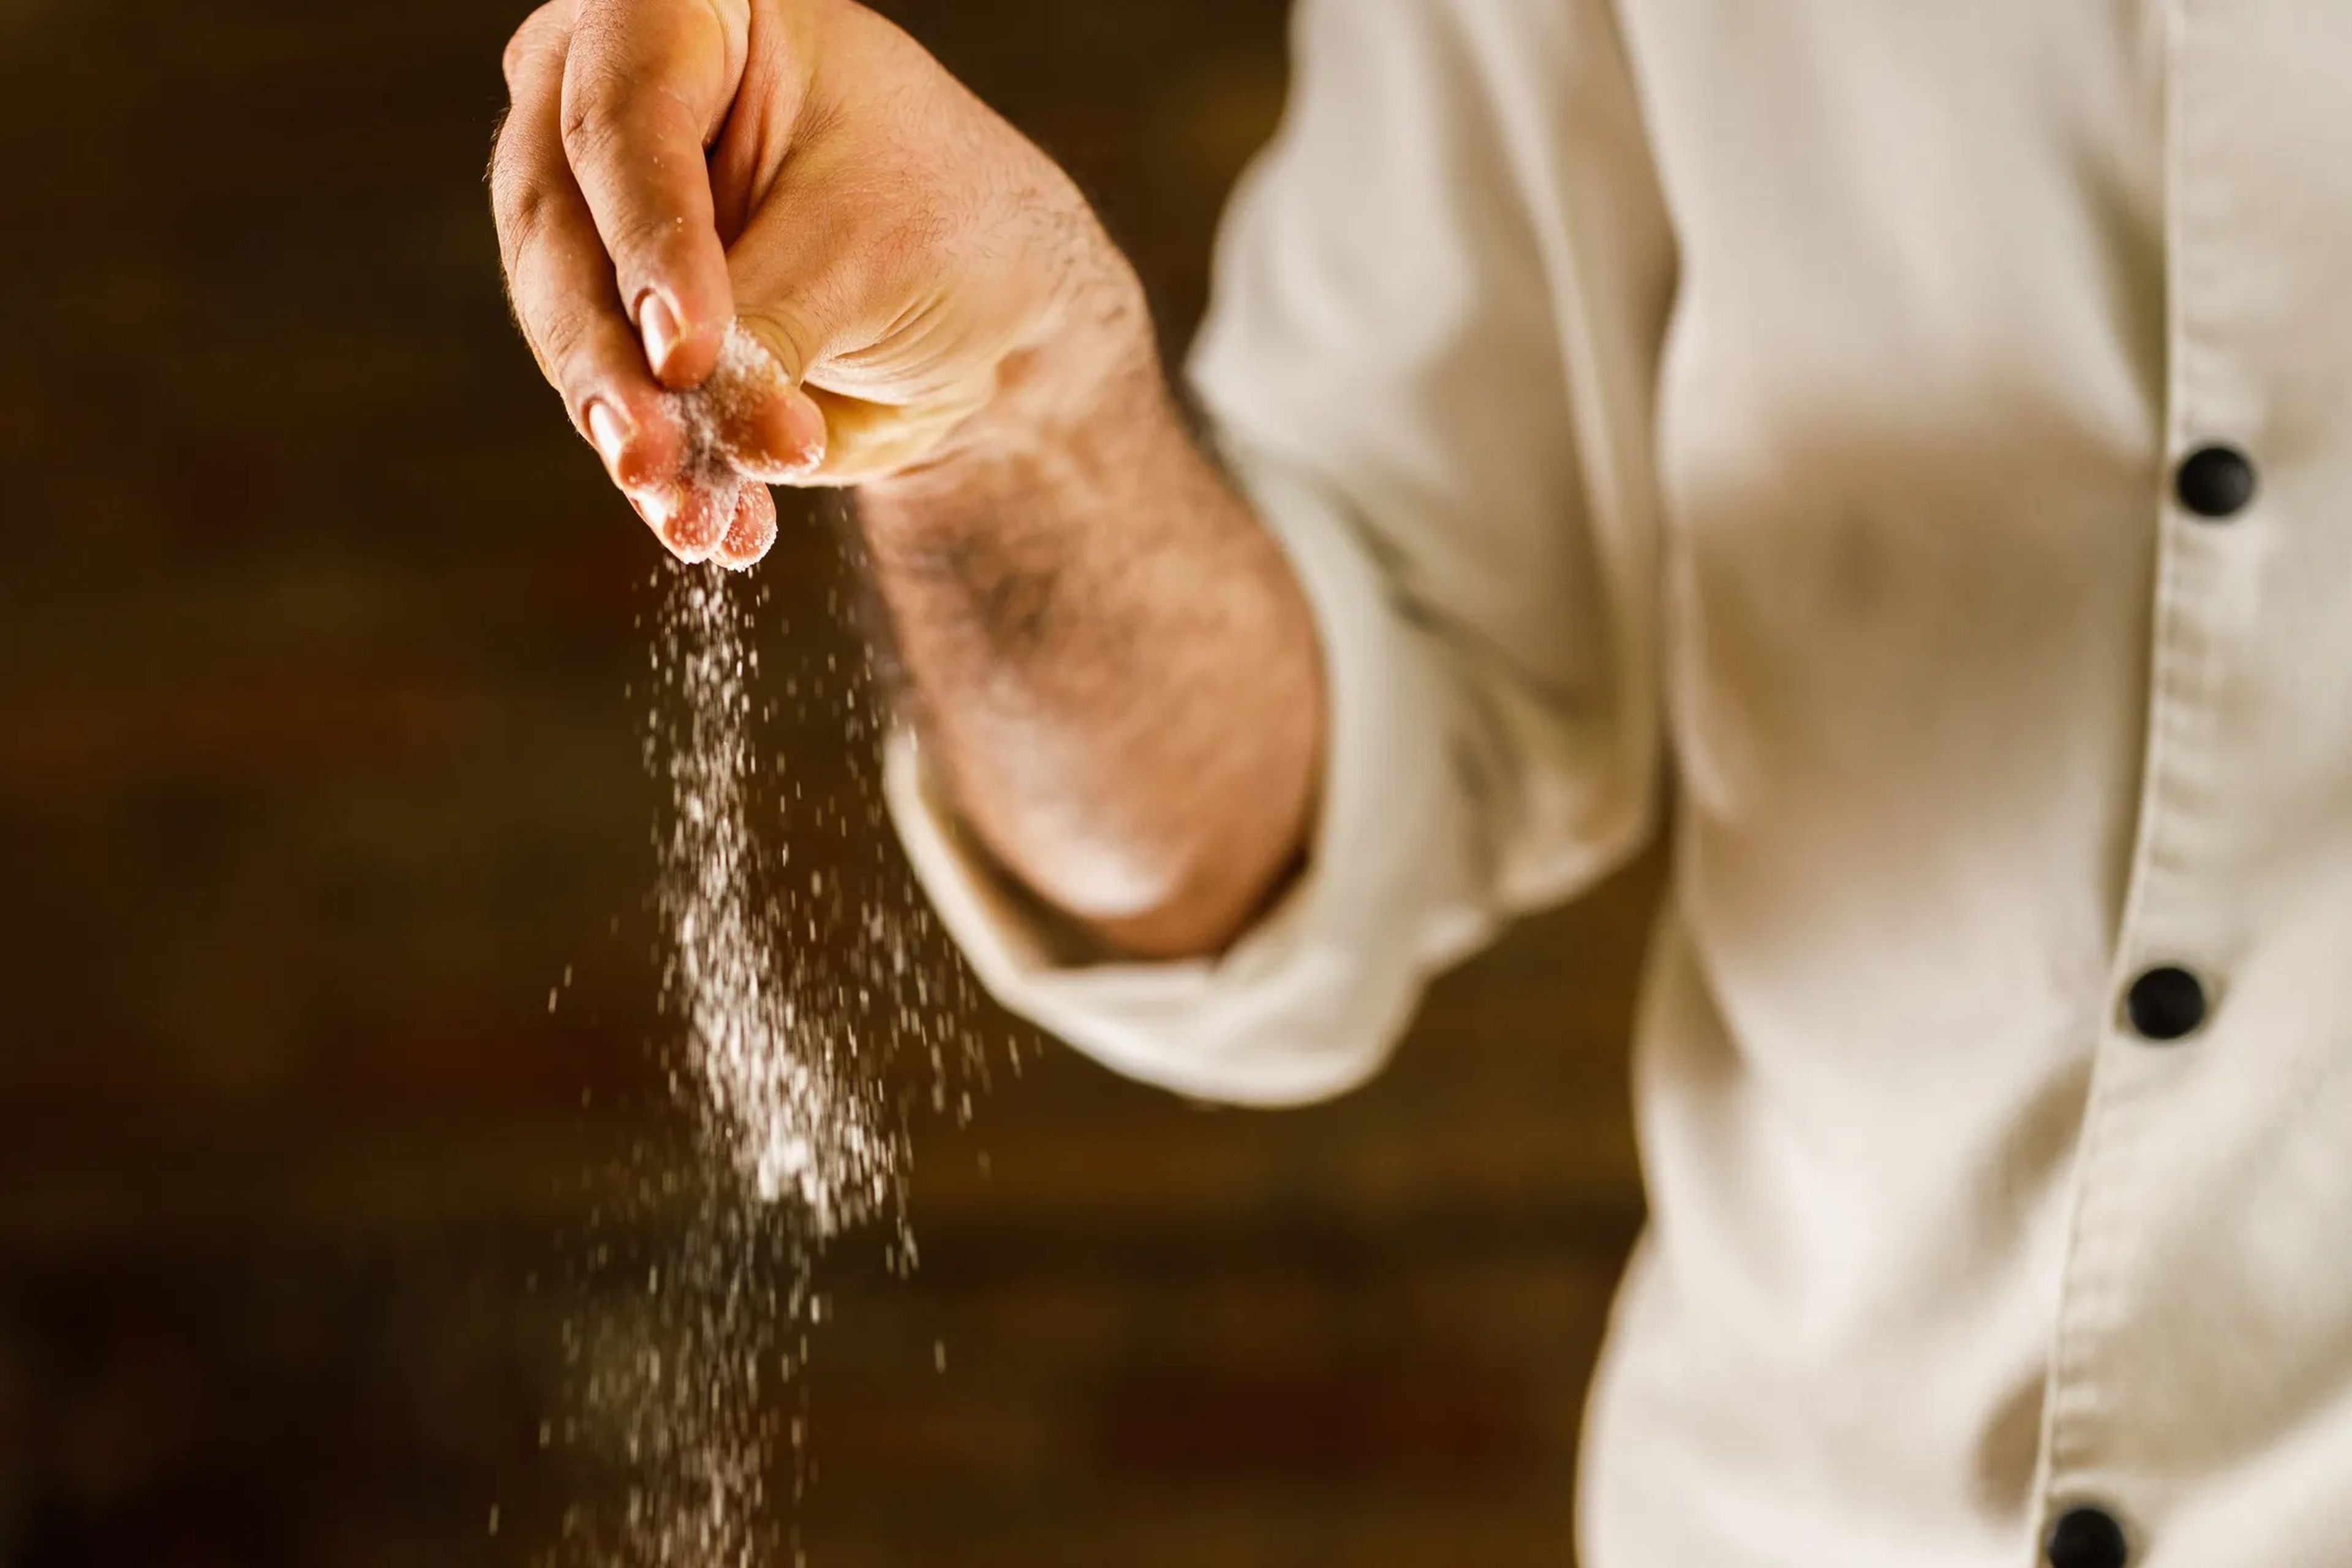 a close up of a man's hand sprinkling salt over a pot